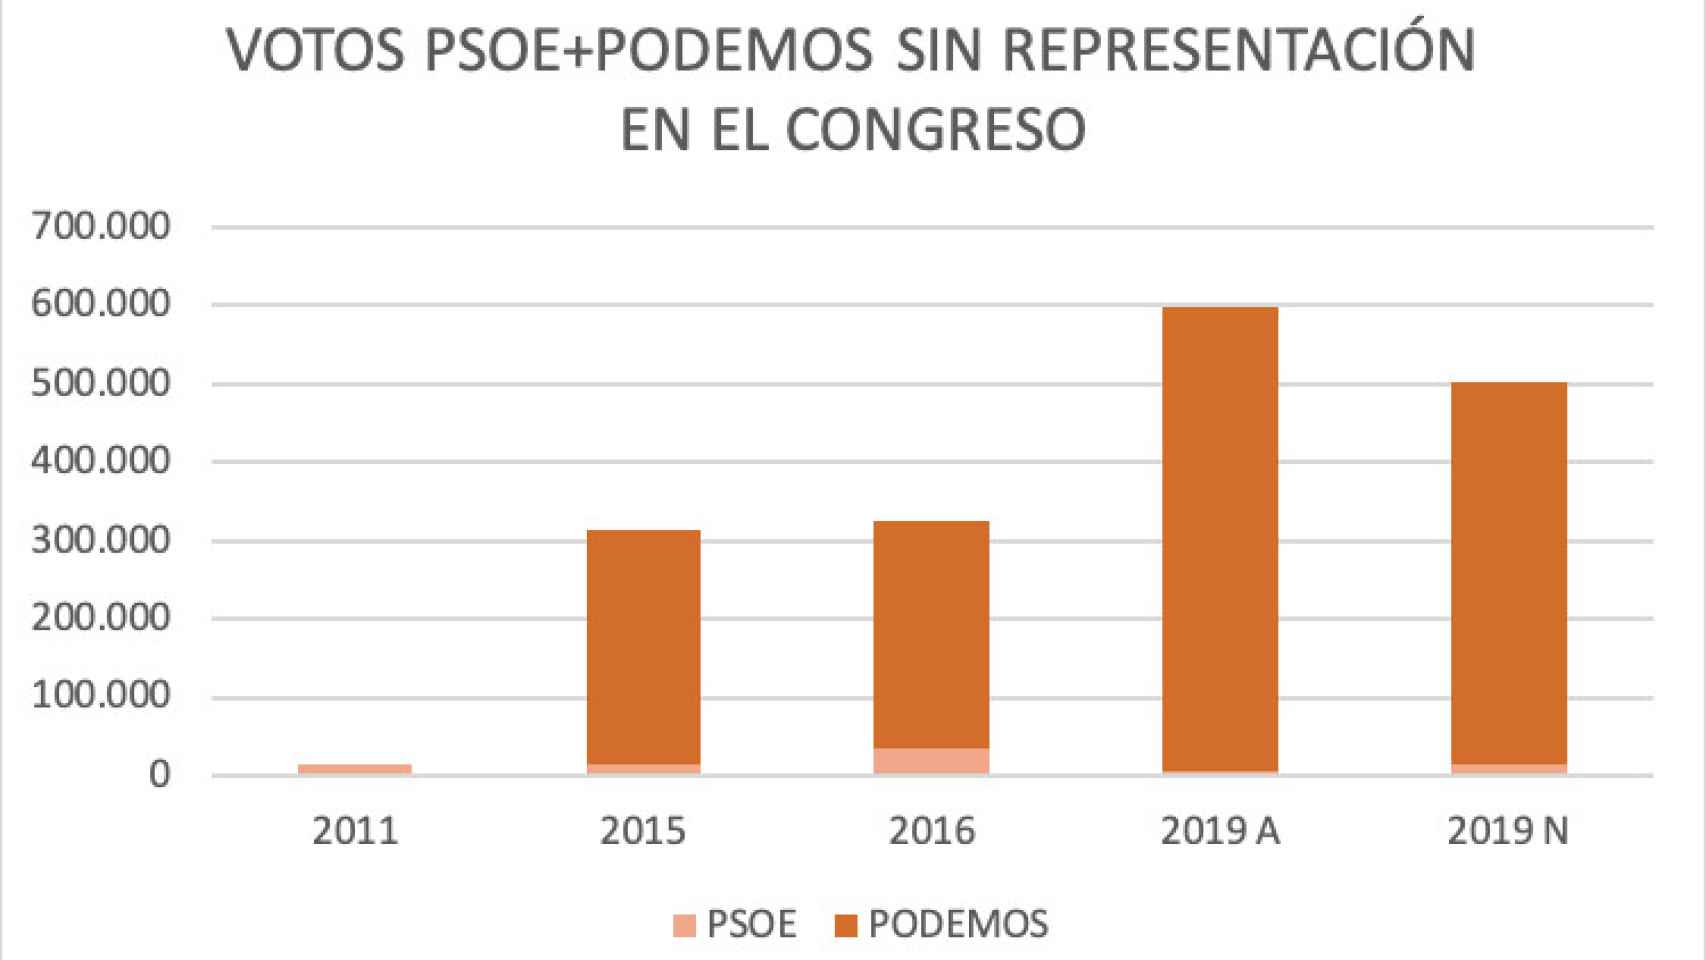 Votos PSOE + Podemos entre 2011 y 2019 sin representación en el Congreso.